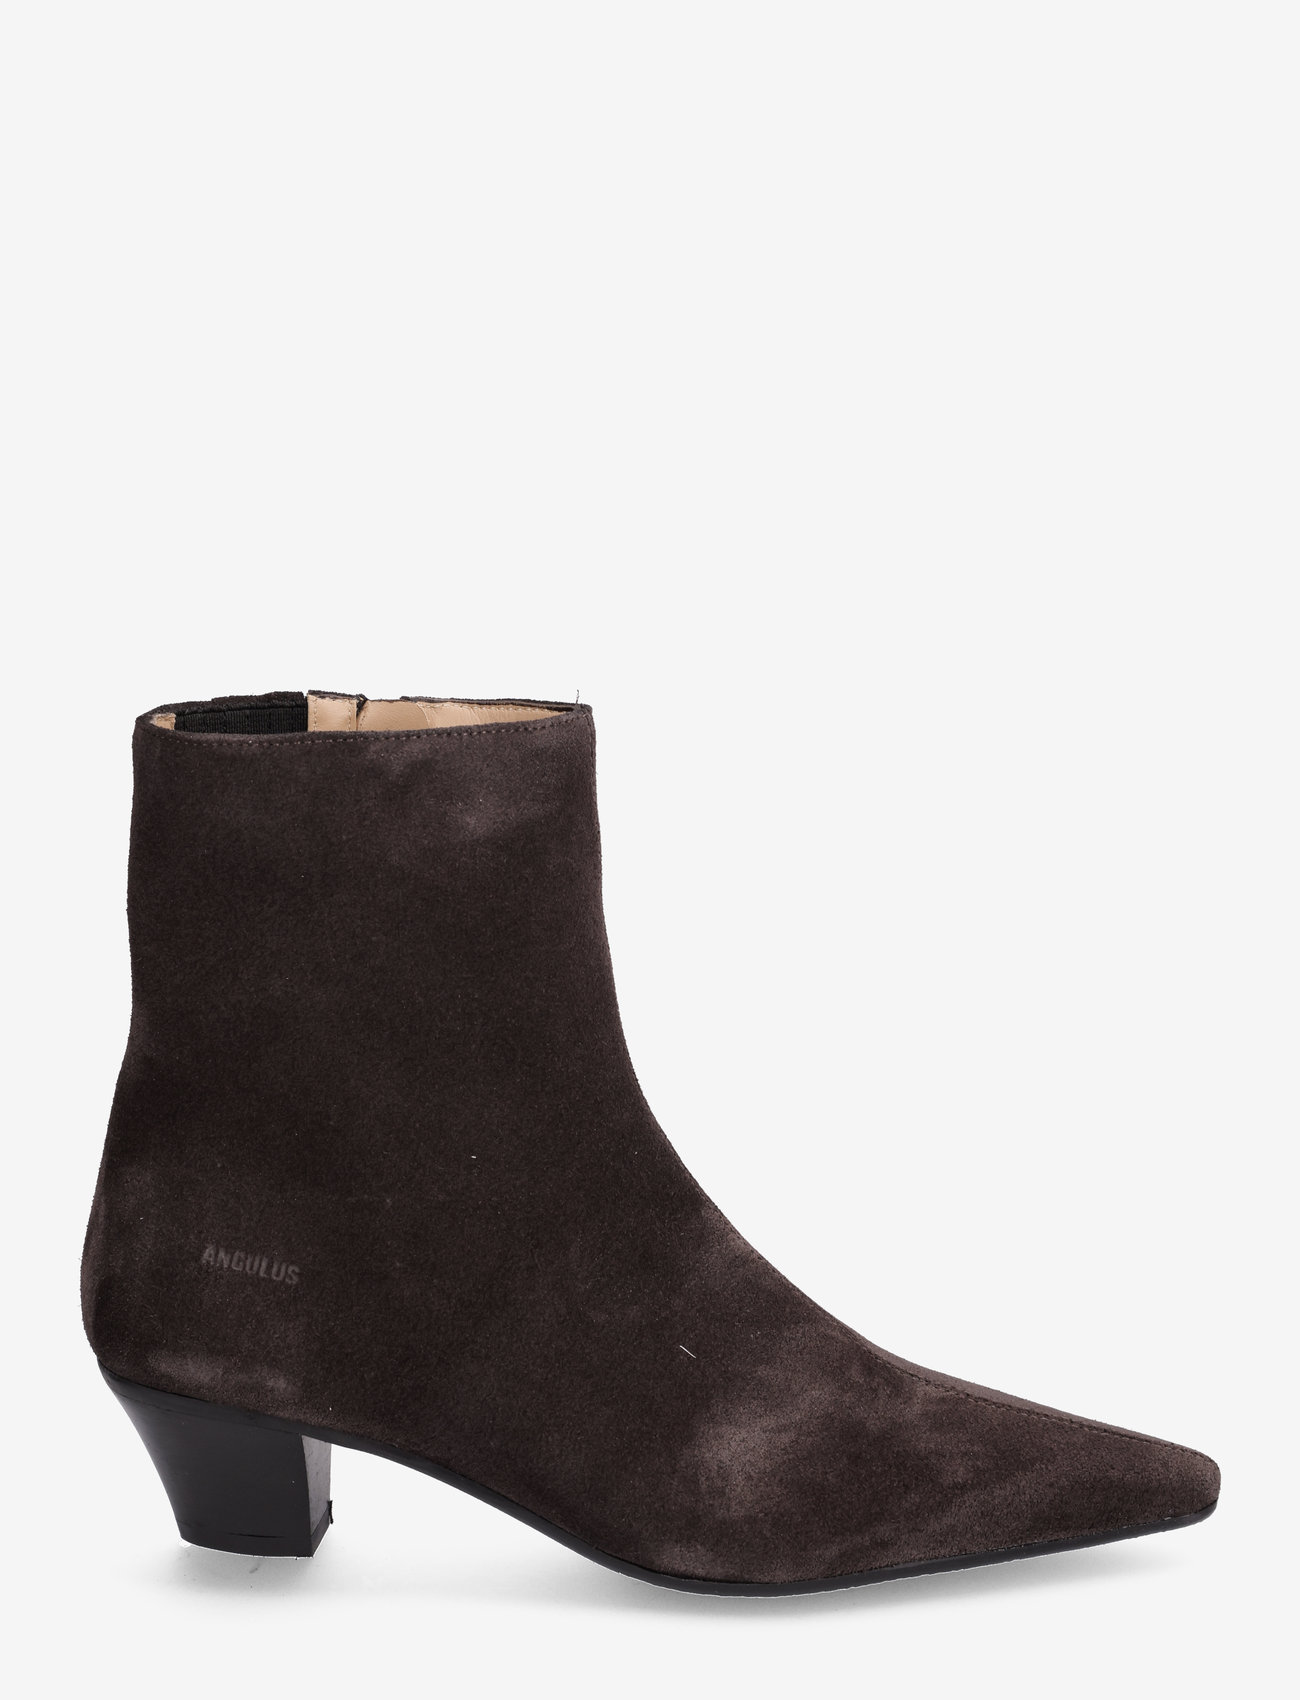 ANGULUS - Boots - Block heel with zipper - kõrge konts - 1716/001 espresso - 1